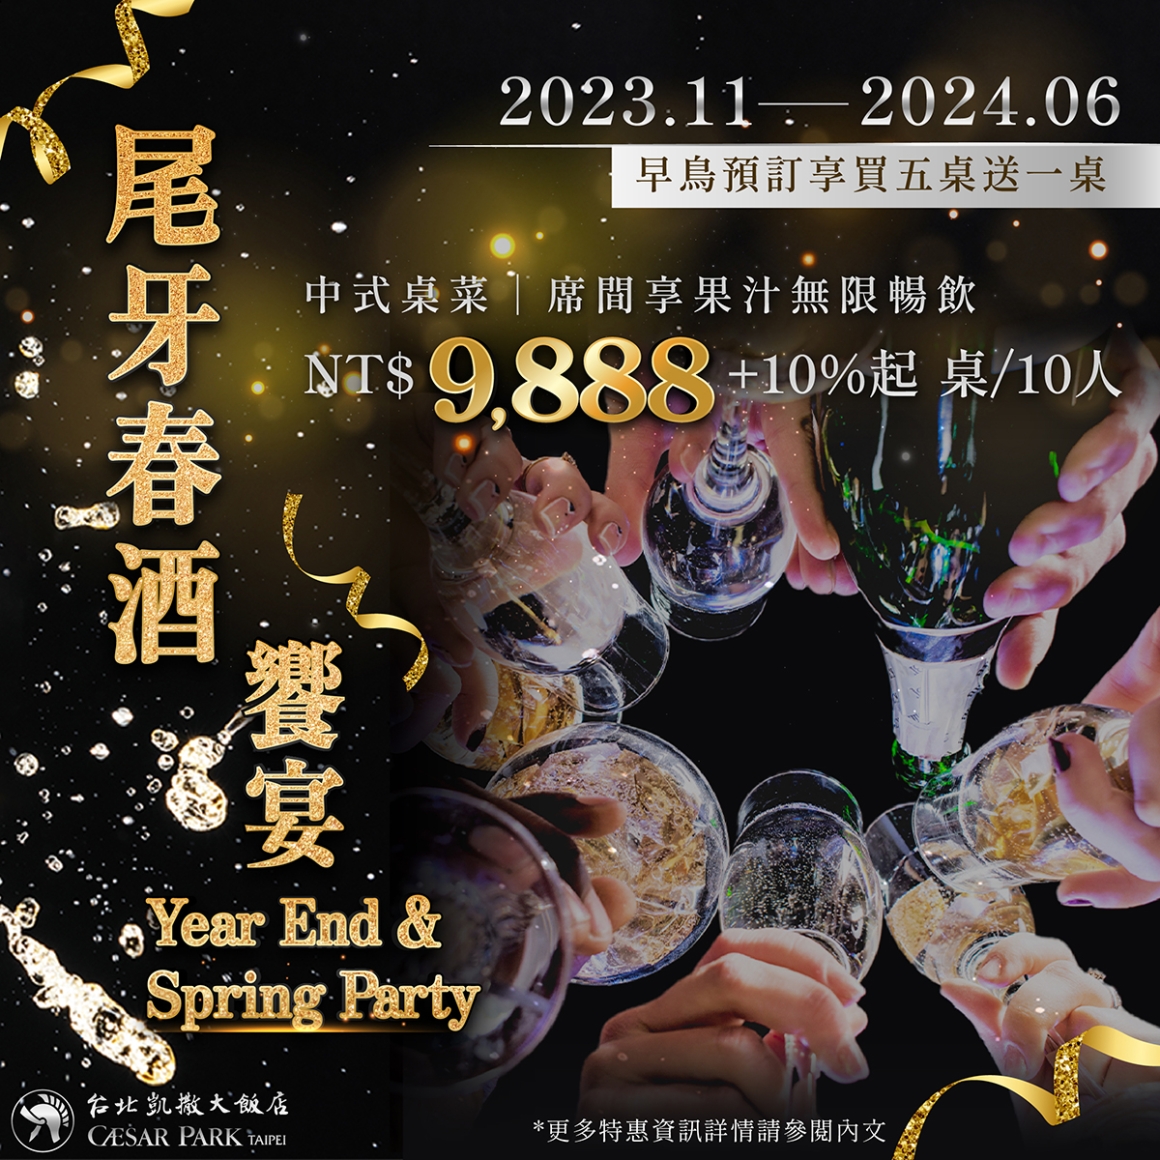 2023-2024尾牙春酒-IG (10月後)